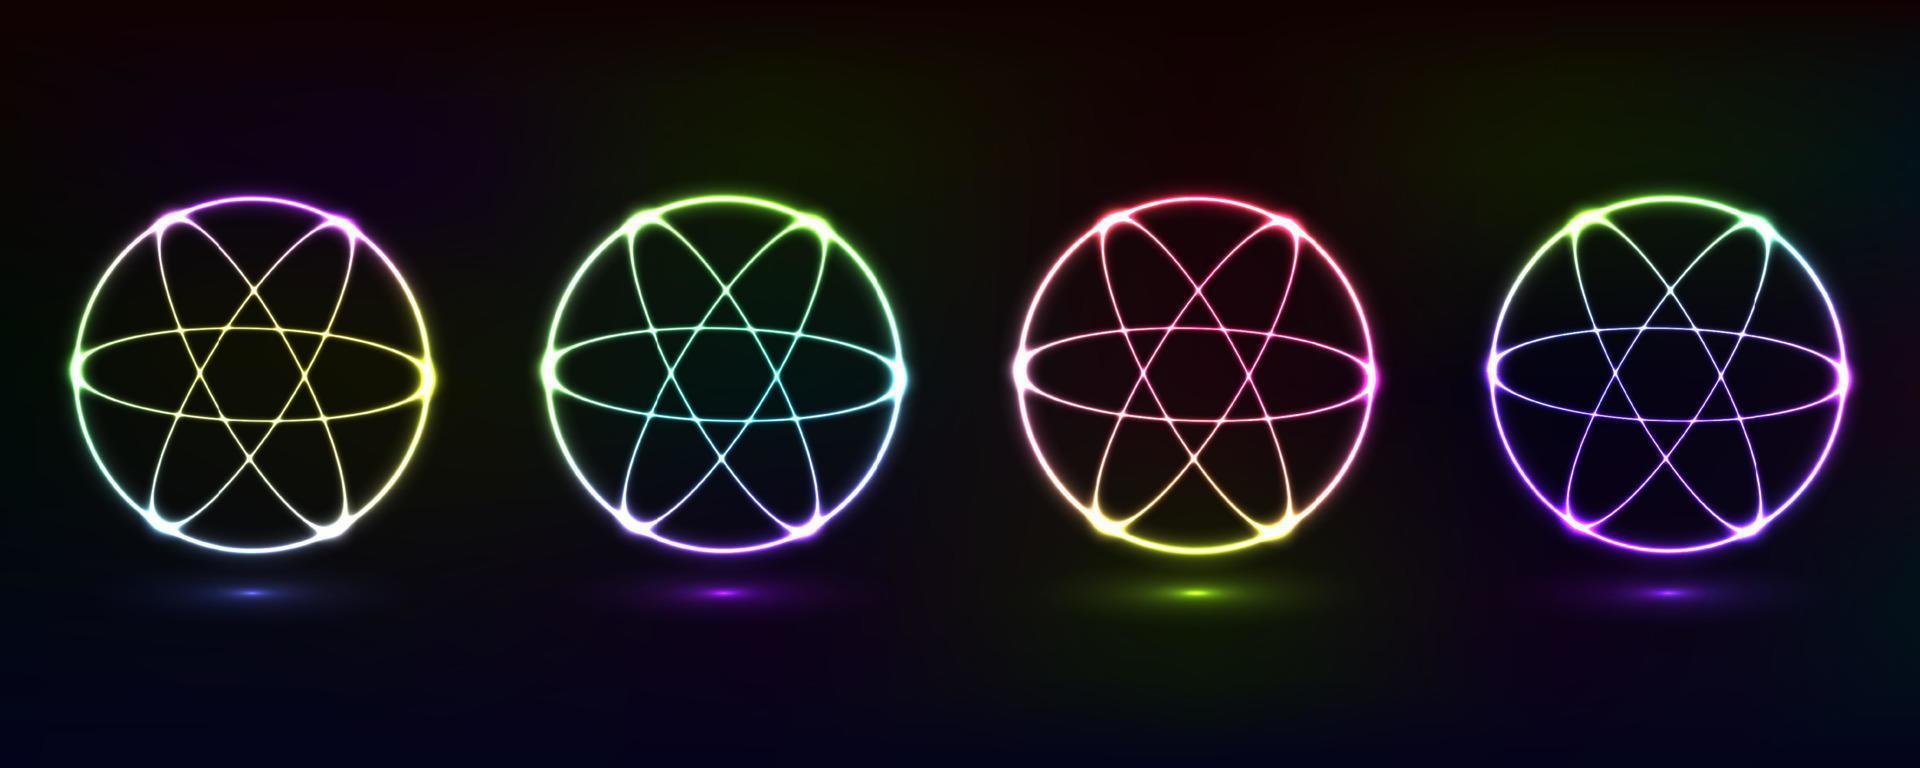 abstrato cósmico dinâmico cor círculo fundo com brilhando néon iluminação em Sombrio fundo vetor